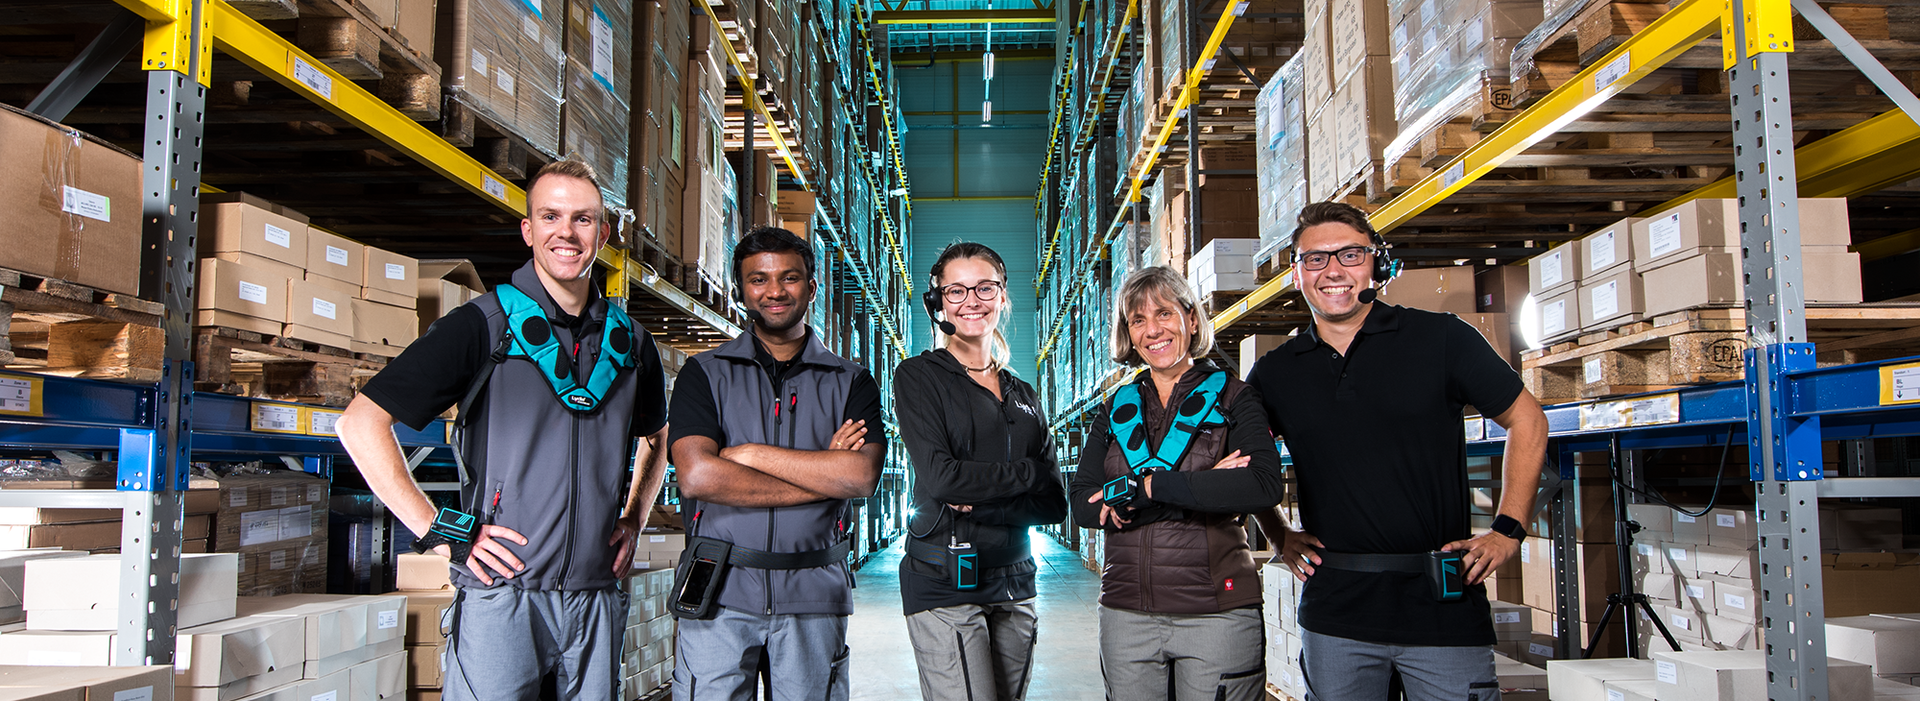 La imagen muestra a cinco trabajadores del almacén que trabajan con los dispositivos de voz.